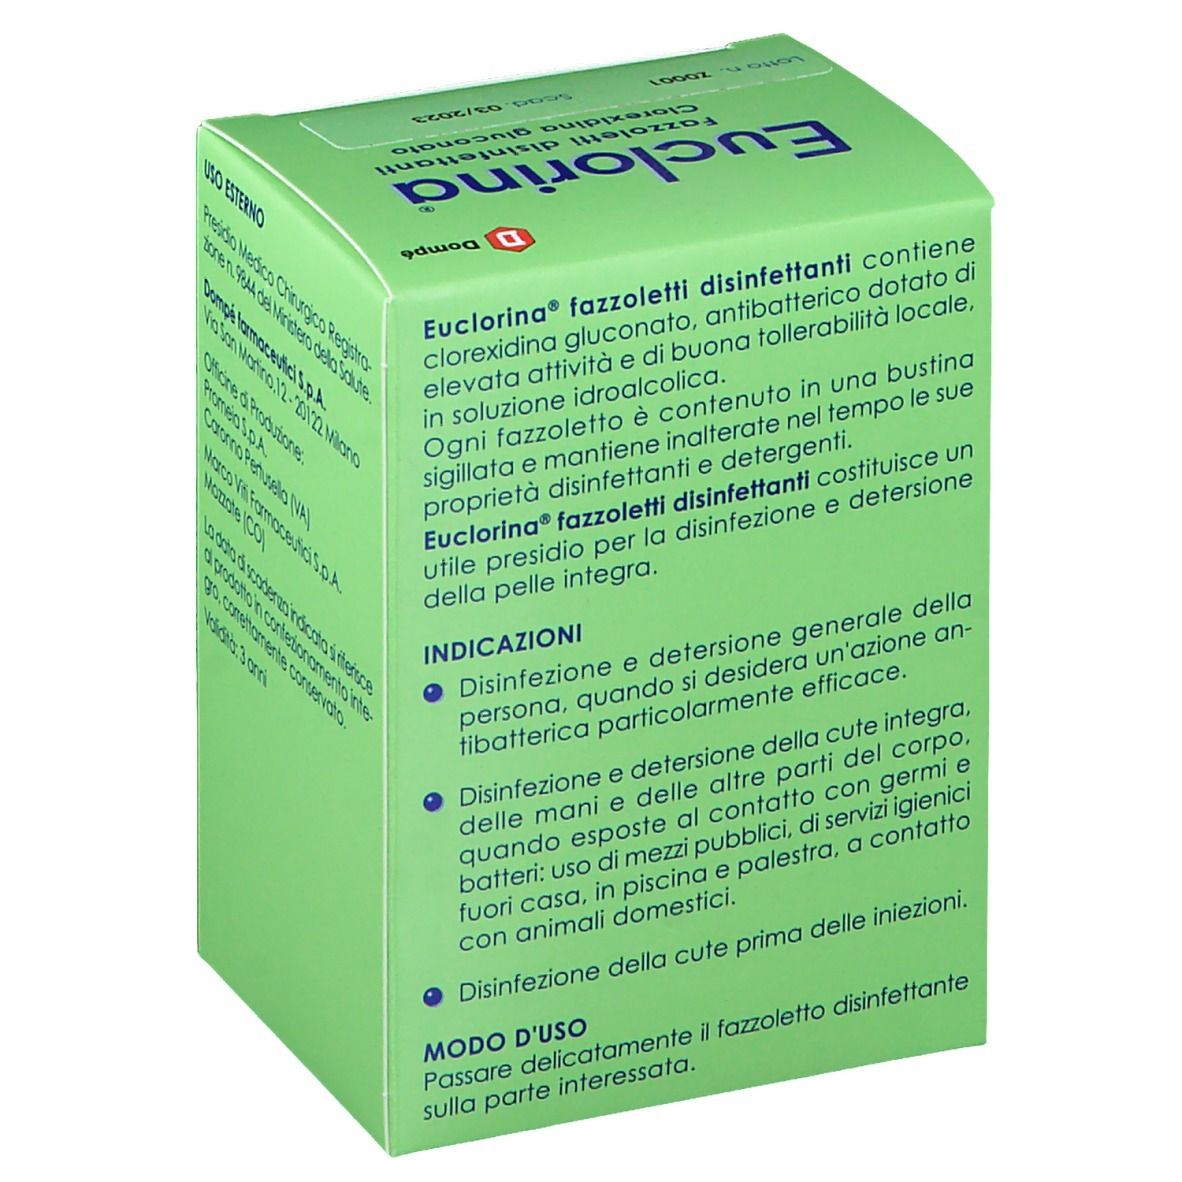 Bracco Euclorina® Fazzoletti Disinfettanti